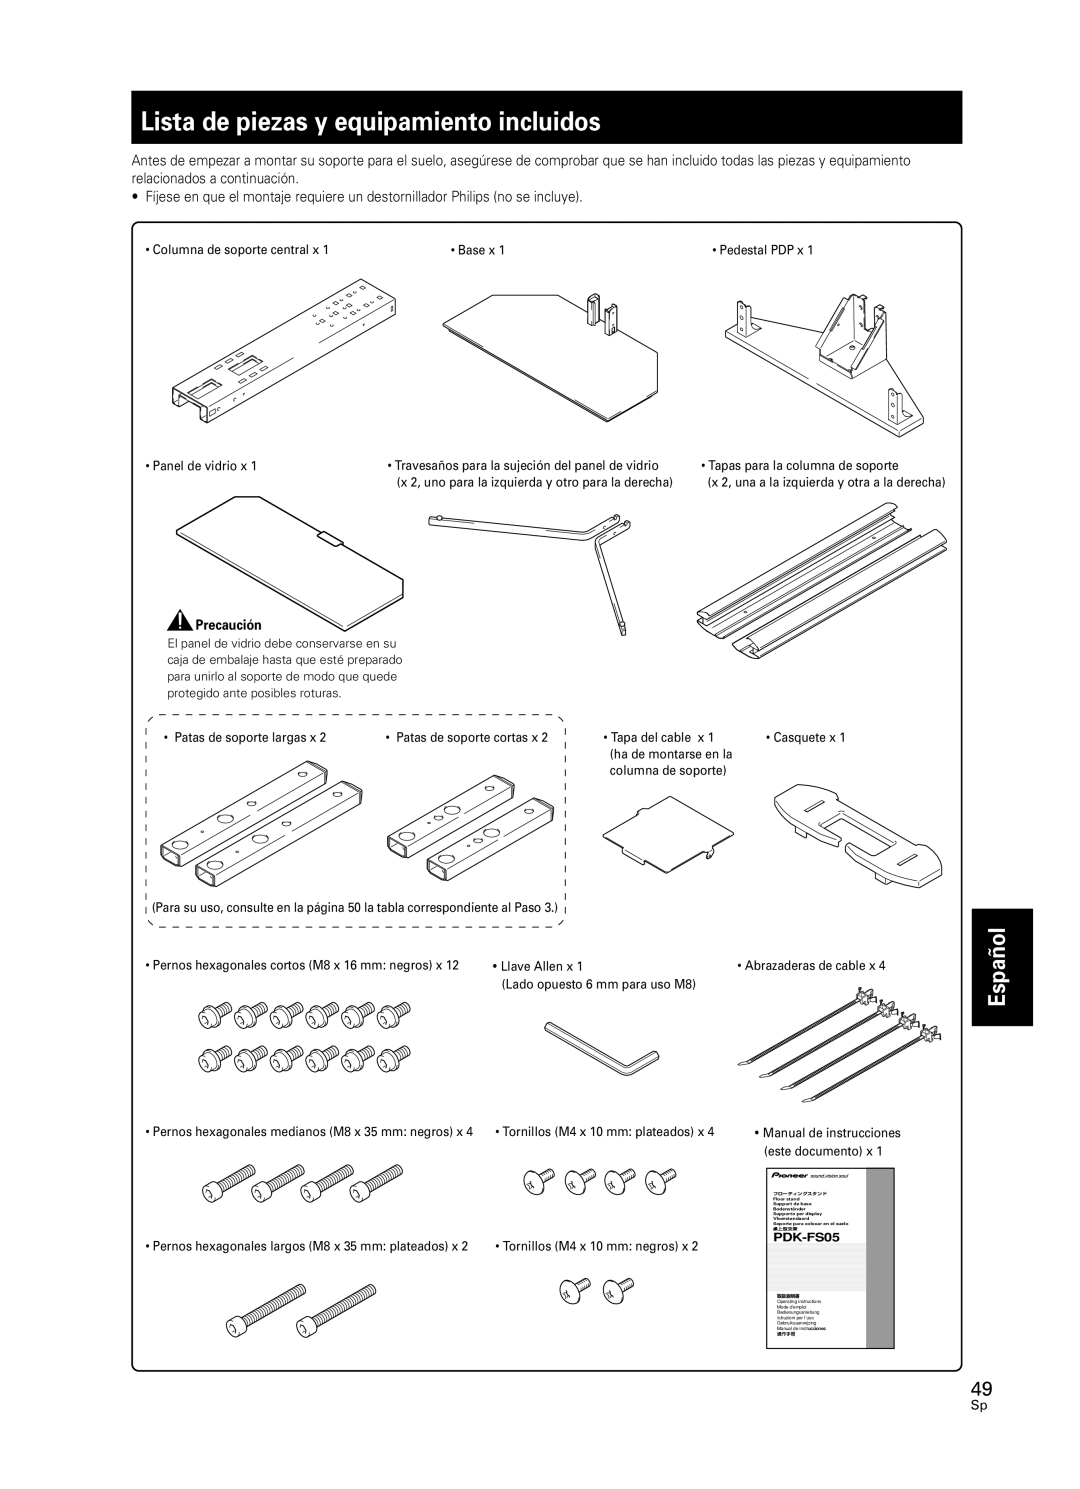 Pioneer PDK-FS05 manual Lista de piezas y equipamiento incluidos, Español 